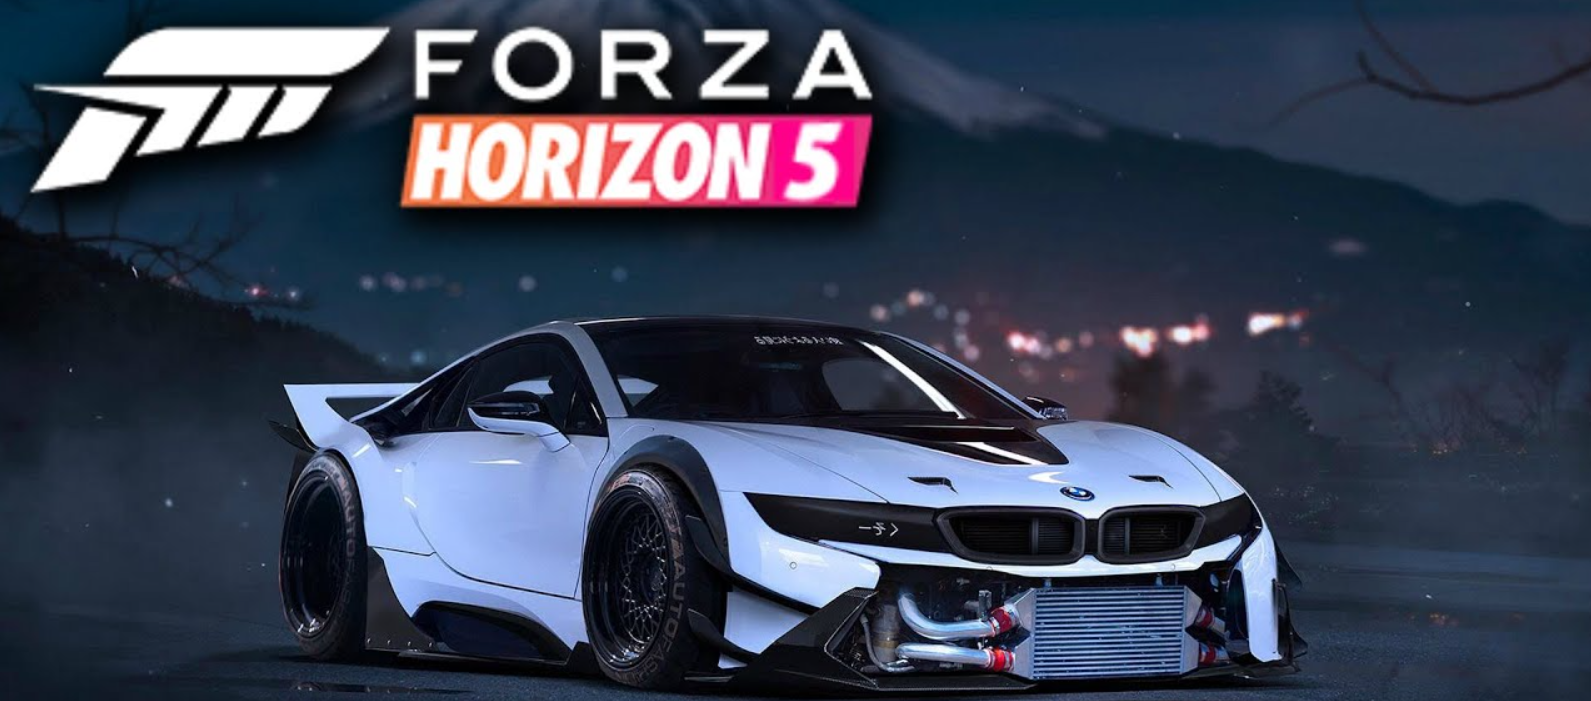 Forza horizon 5 store. Forza Horizon 5 Постер. Forza Horizon 5 обложка. Forza Horizon 5 Xbox. Forza Horizon 5 Premium.